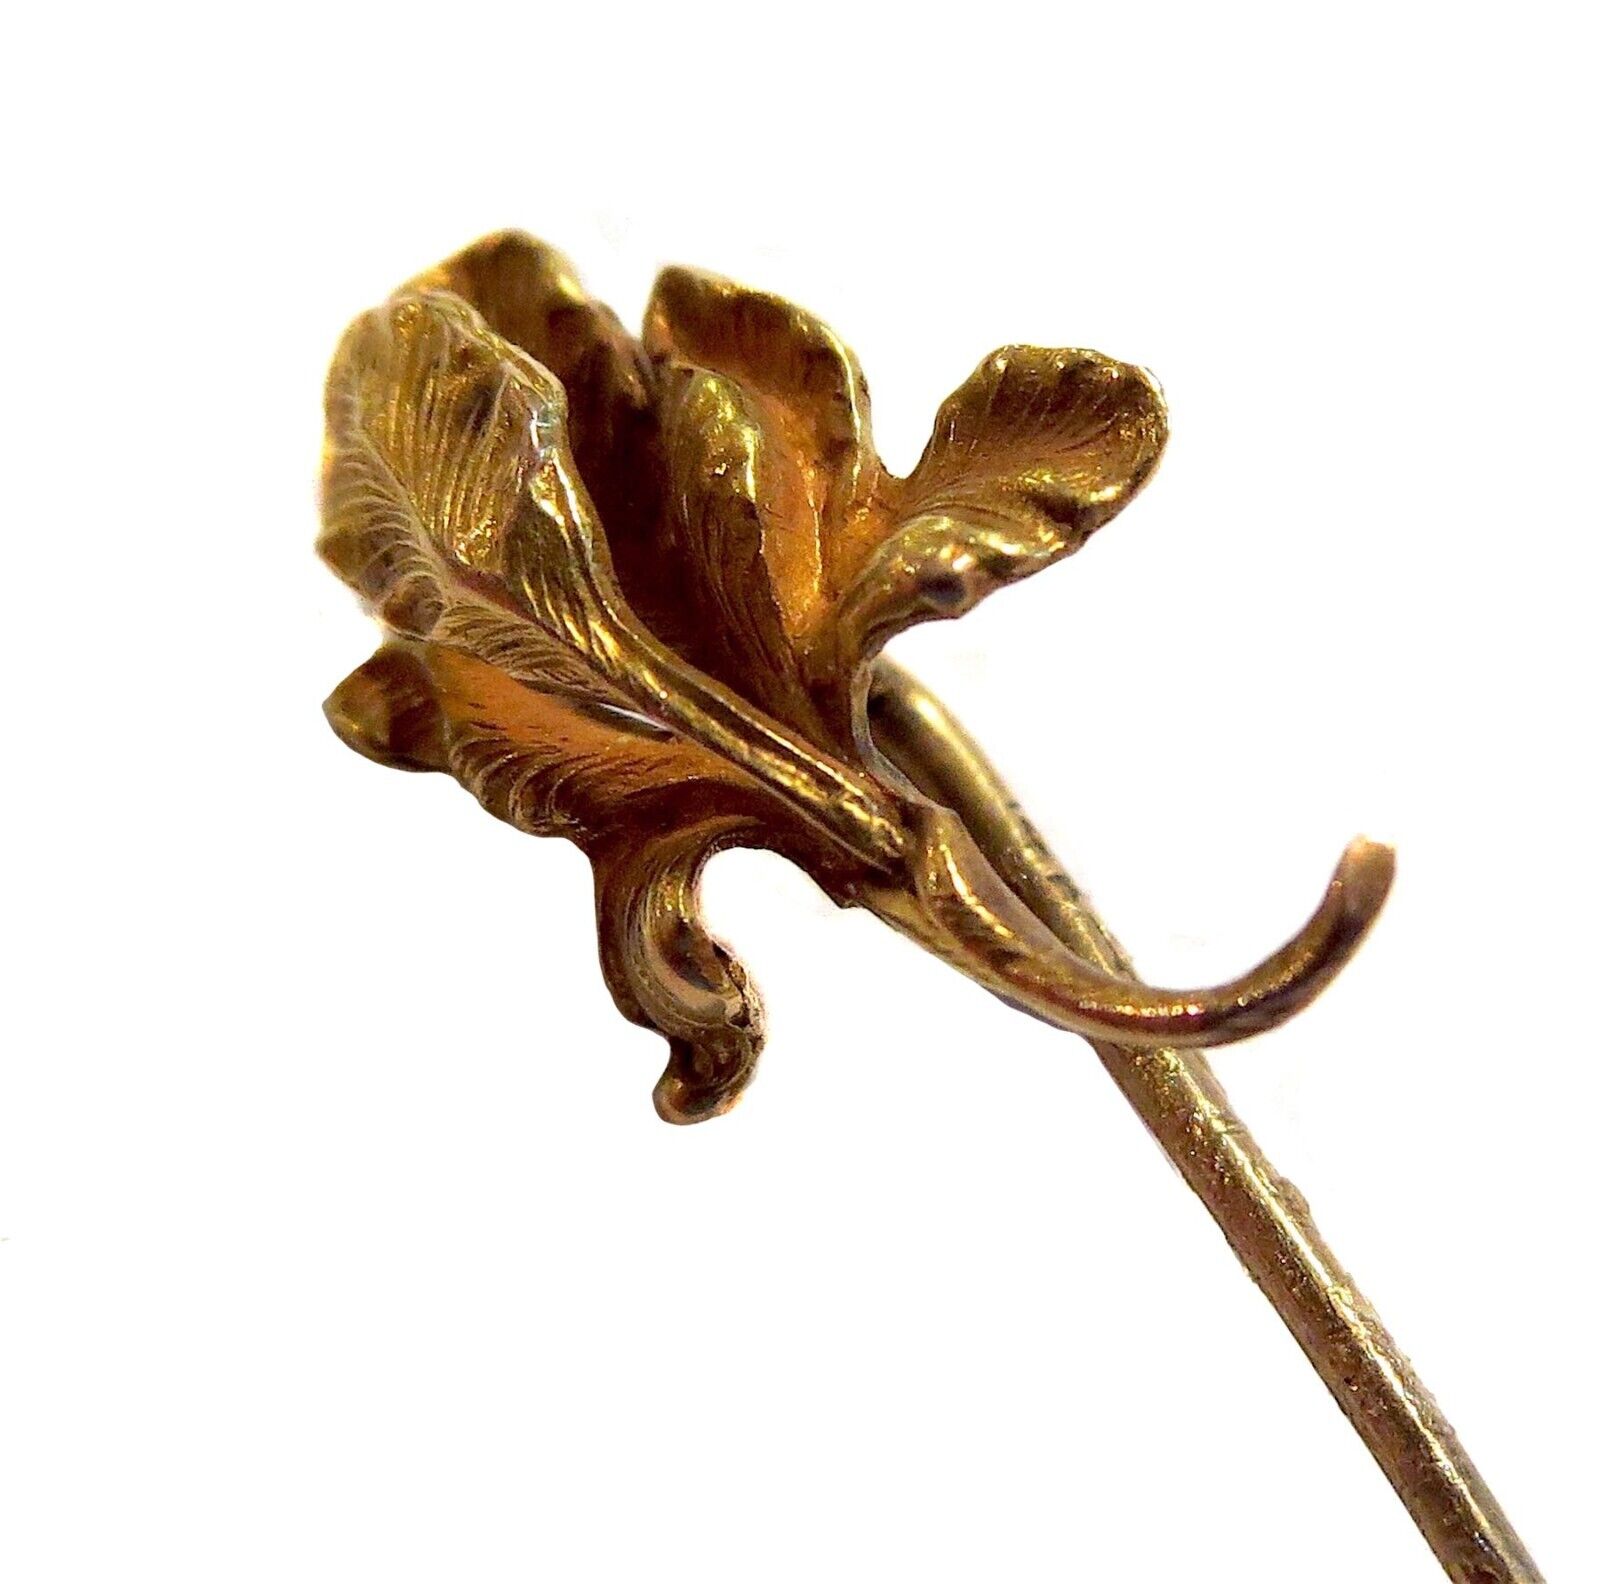 ORCHID Stickpin BIPPART BENNETT Antique ART NOUVE… - image 1